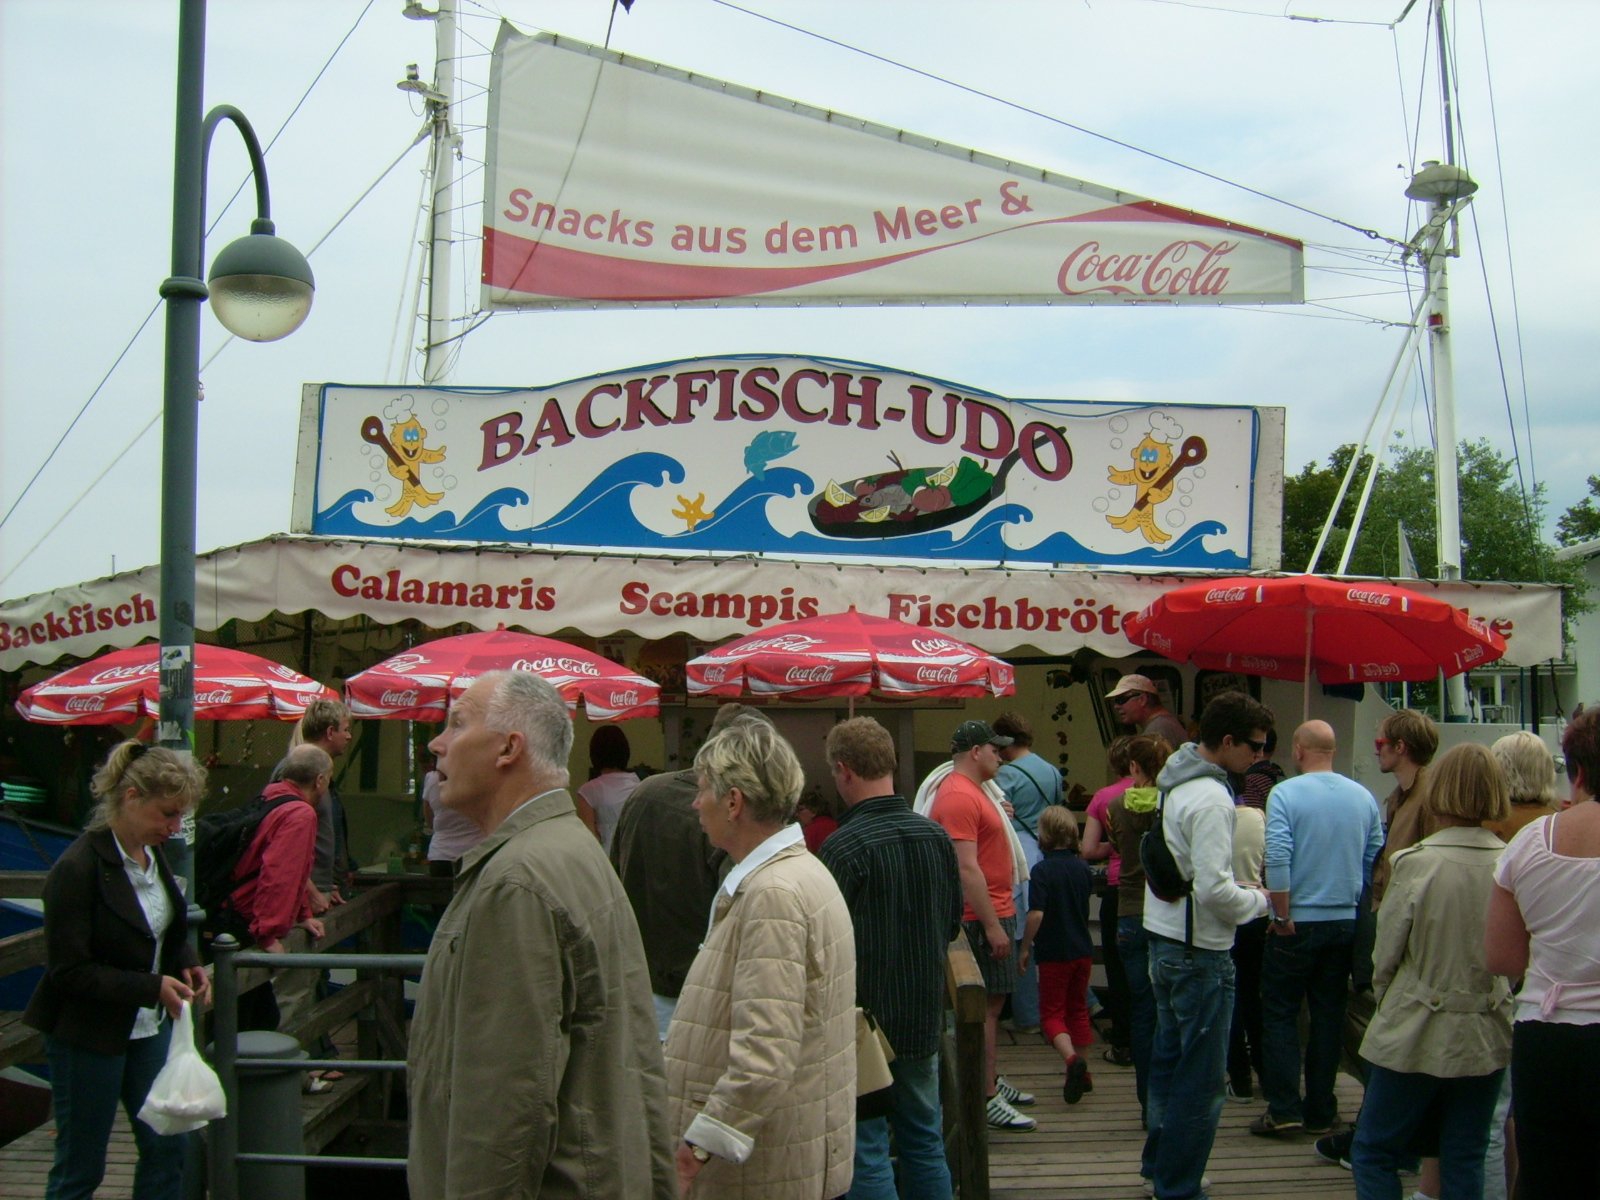 Farbfoto: Verkauf von Fisch, Scampis und Calamaris in Warnemünde. Fotograf: Bernd Paepcke.